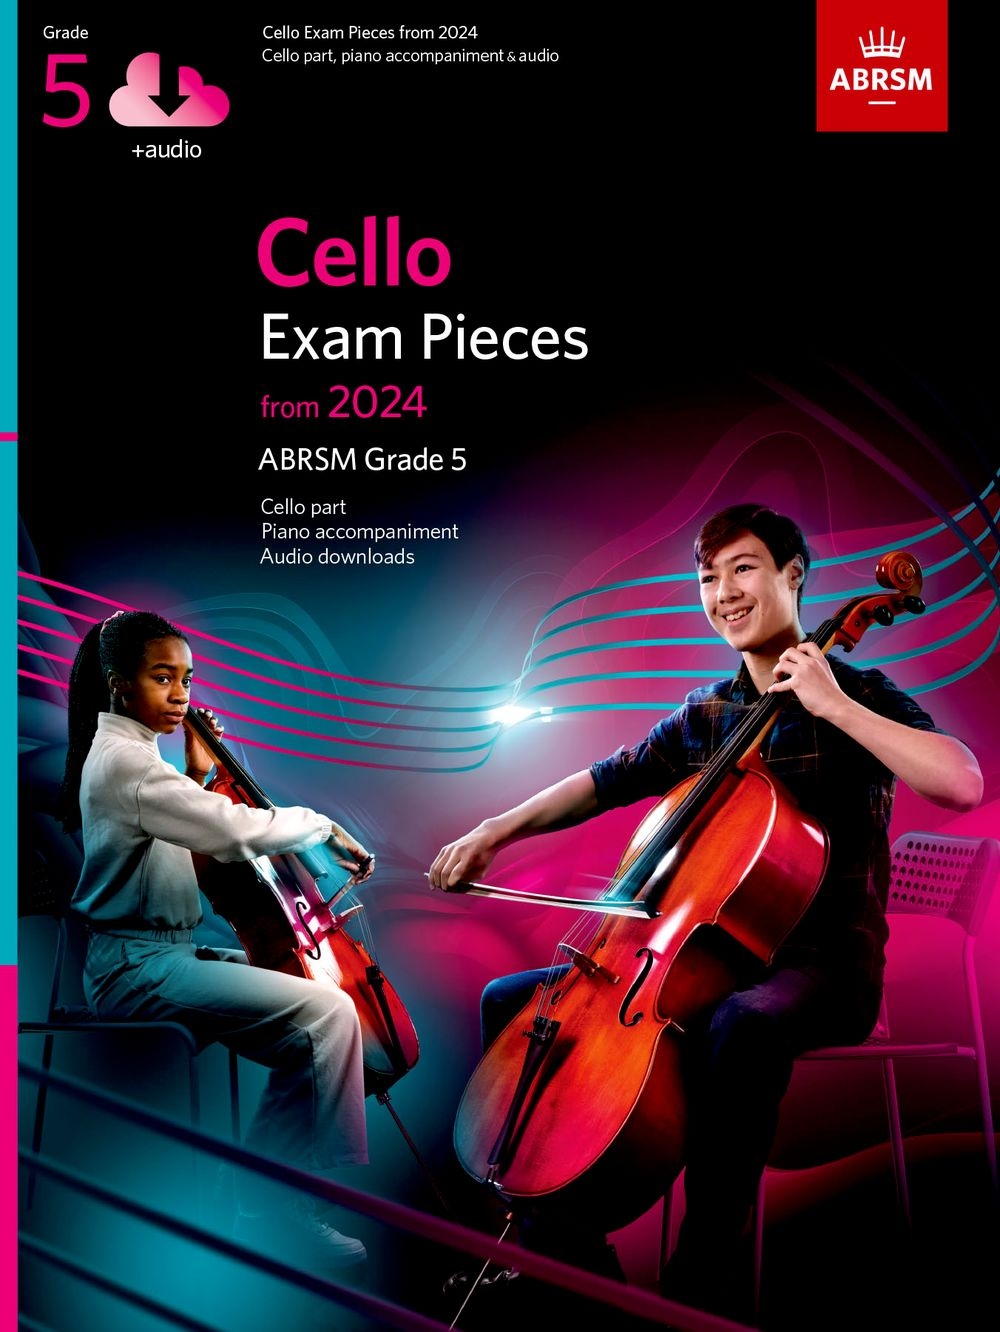 Cello Exam Pieces from 2024, ABRSM Grade 5